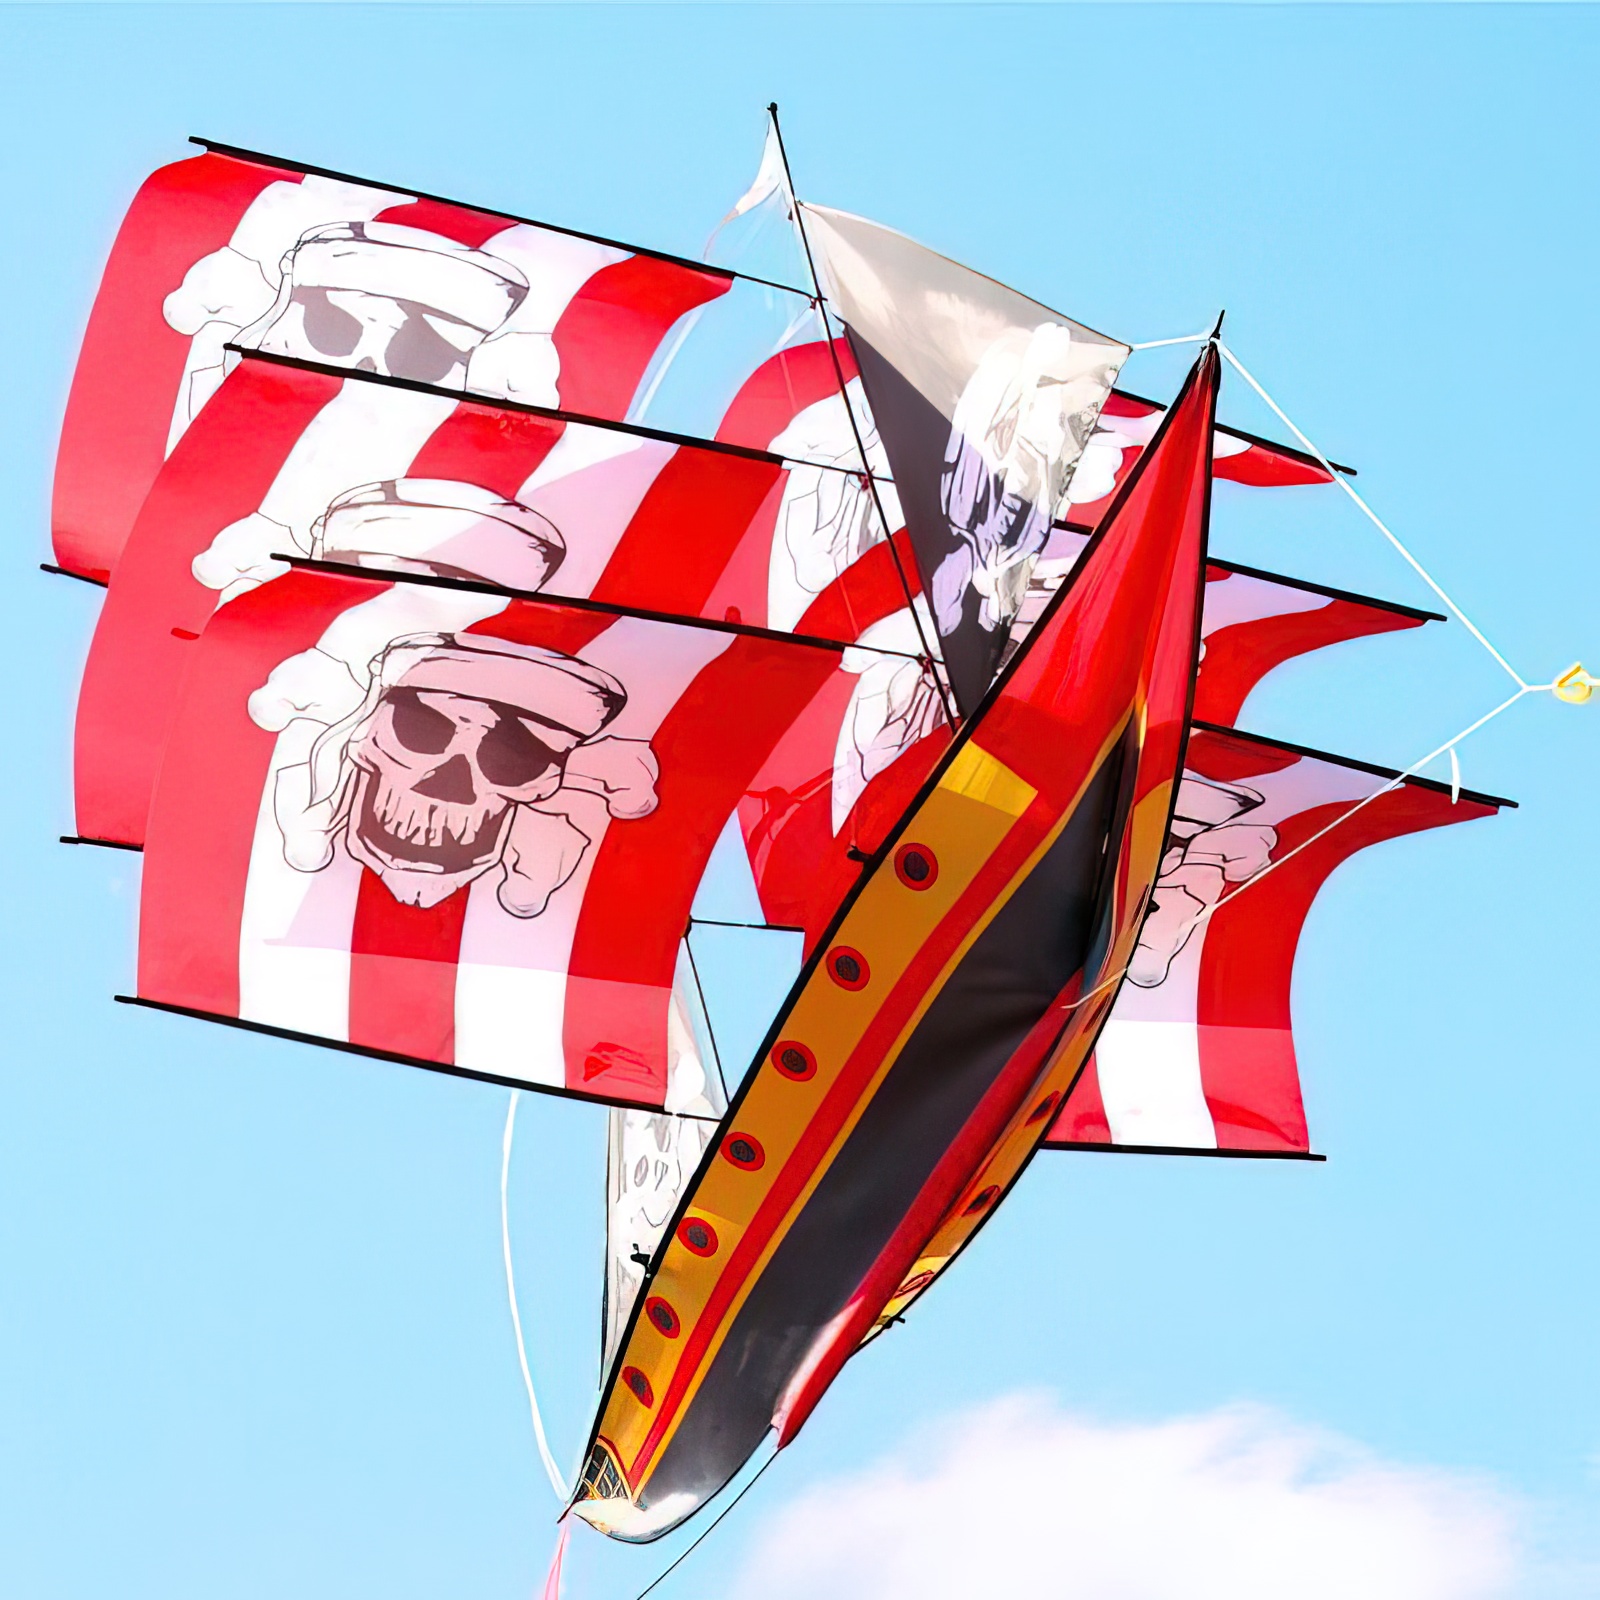 WindNSun - 3D-Einleiner-Drachen/Kinderdrachen (1-Leiner) rtf (flugfertig) Piratenschiff 90 cm x 70 cm Polyestertuch mit Druck Gfk-Gestänge rot/weiß/schwarz